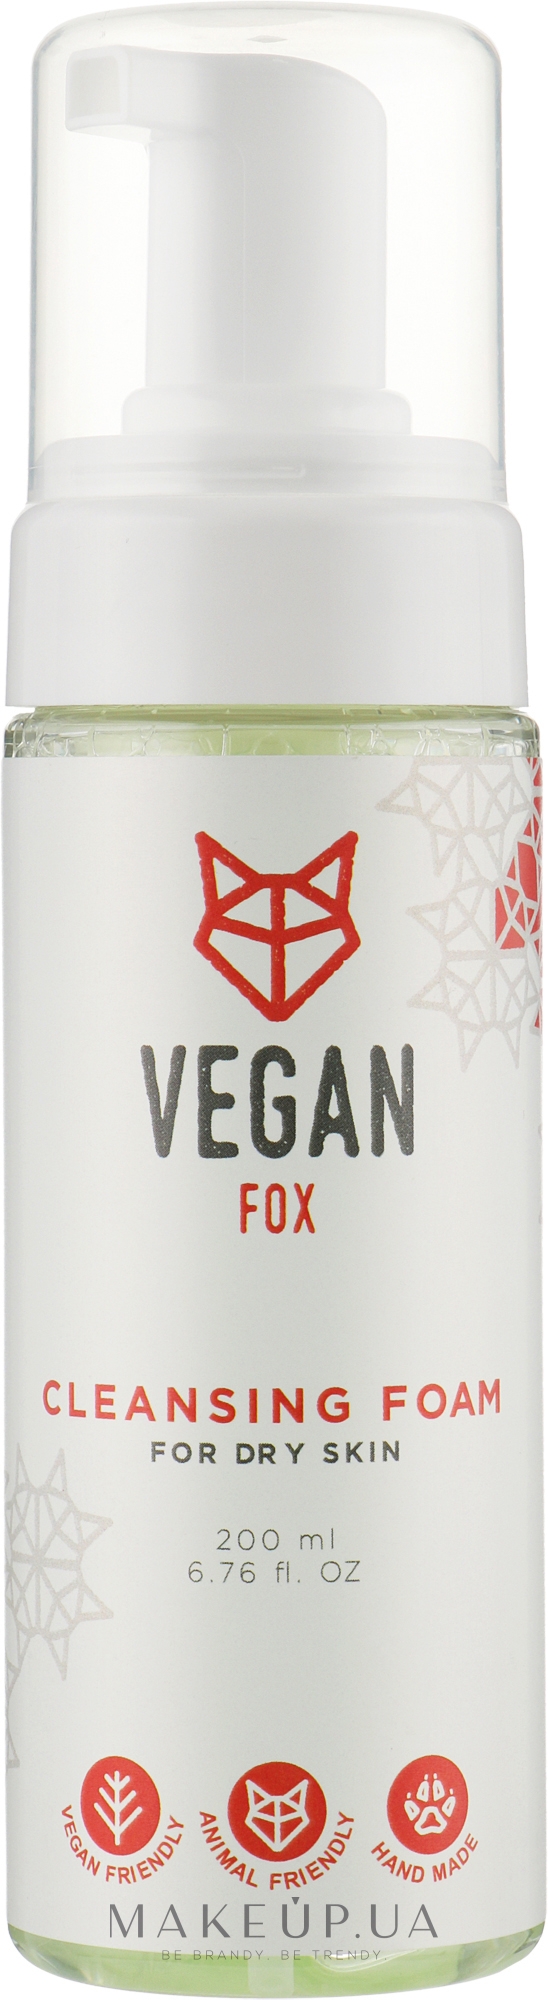 Очищающая пенка для сухой кожи - Vegan Fox Cleansing Foam For Dry Skin — фото 200ml